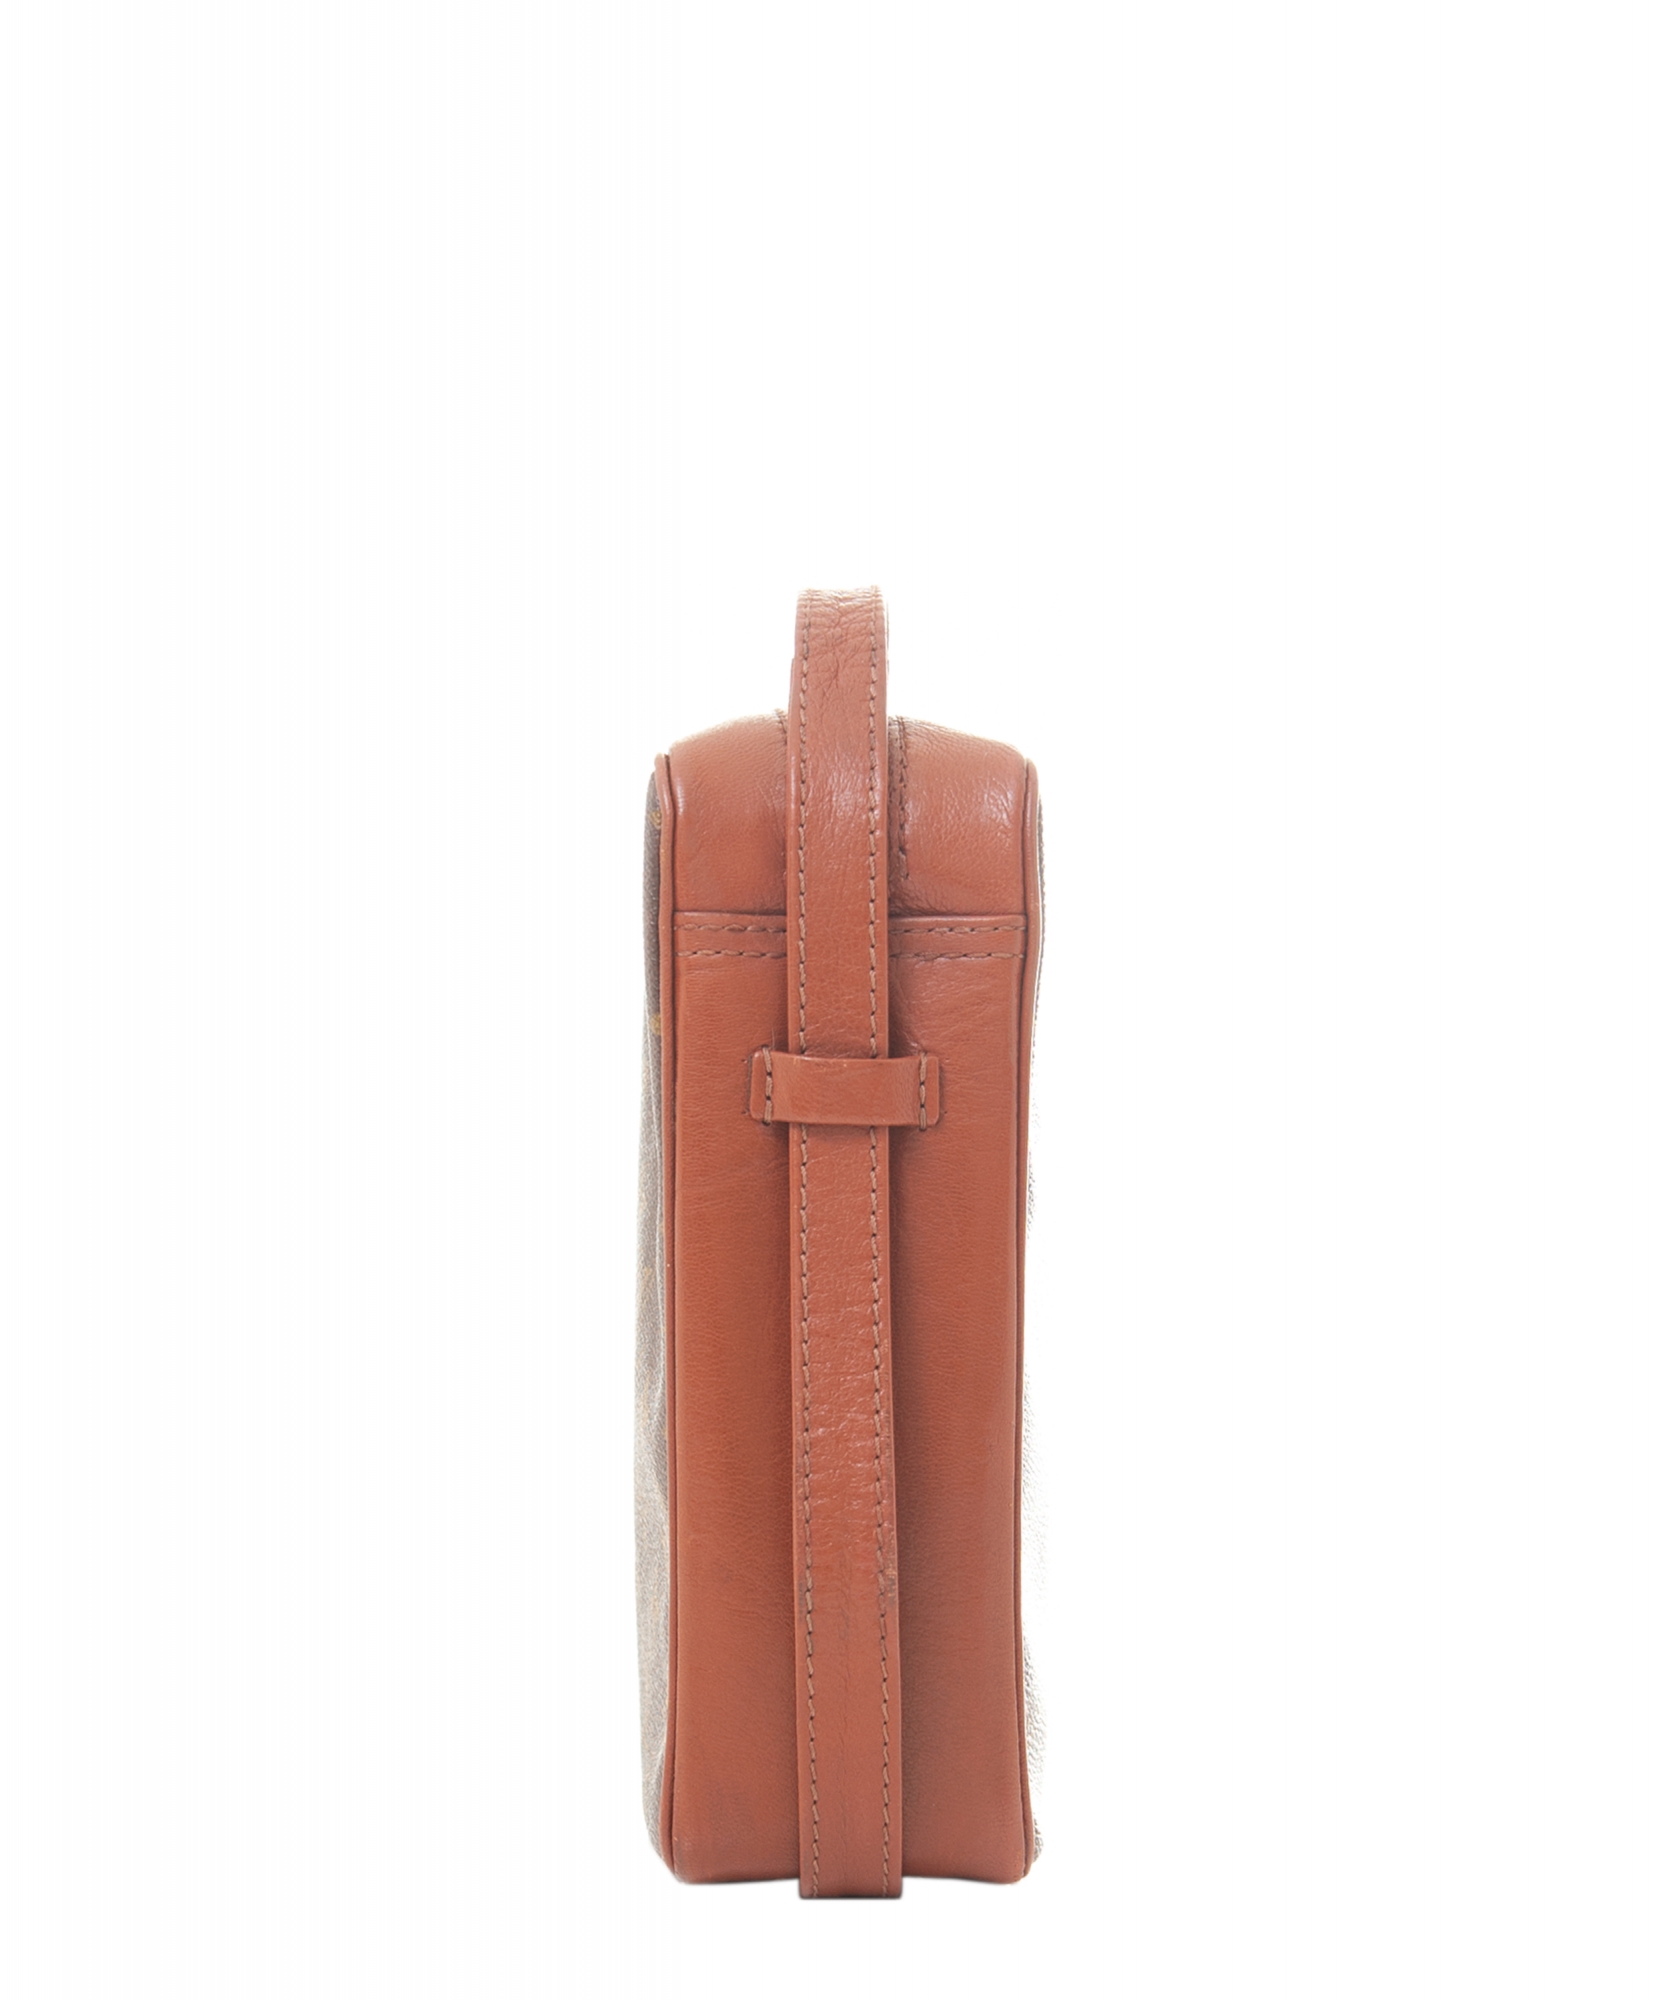 Bandoulière Bag Strap - Luxury Monogram Reverse Canvas Brown